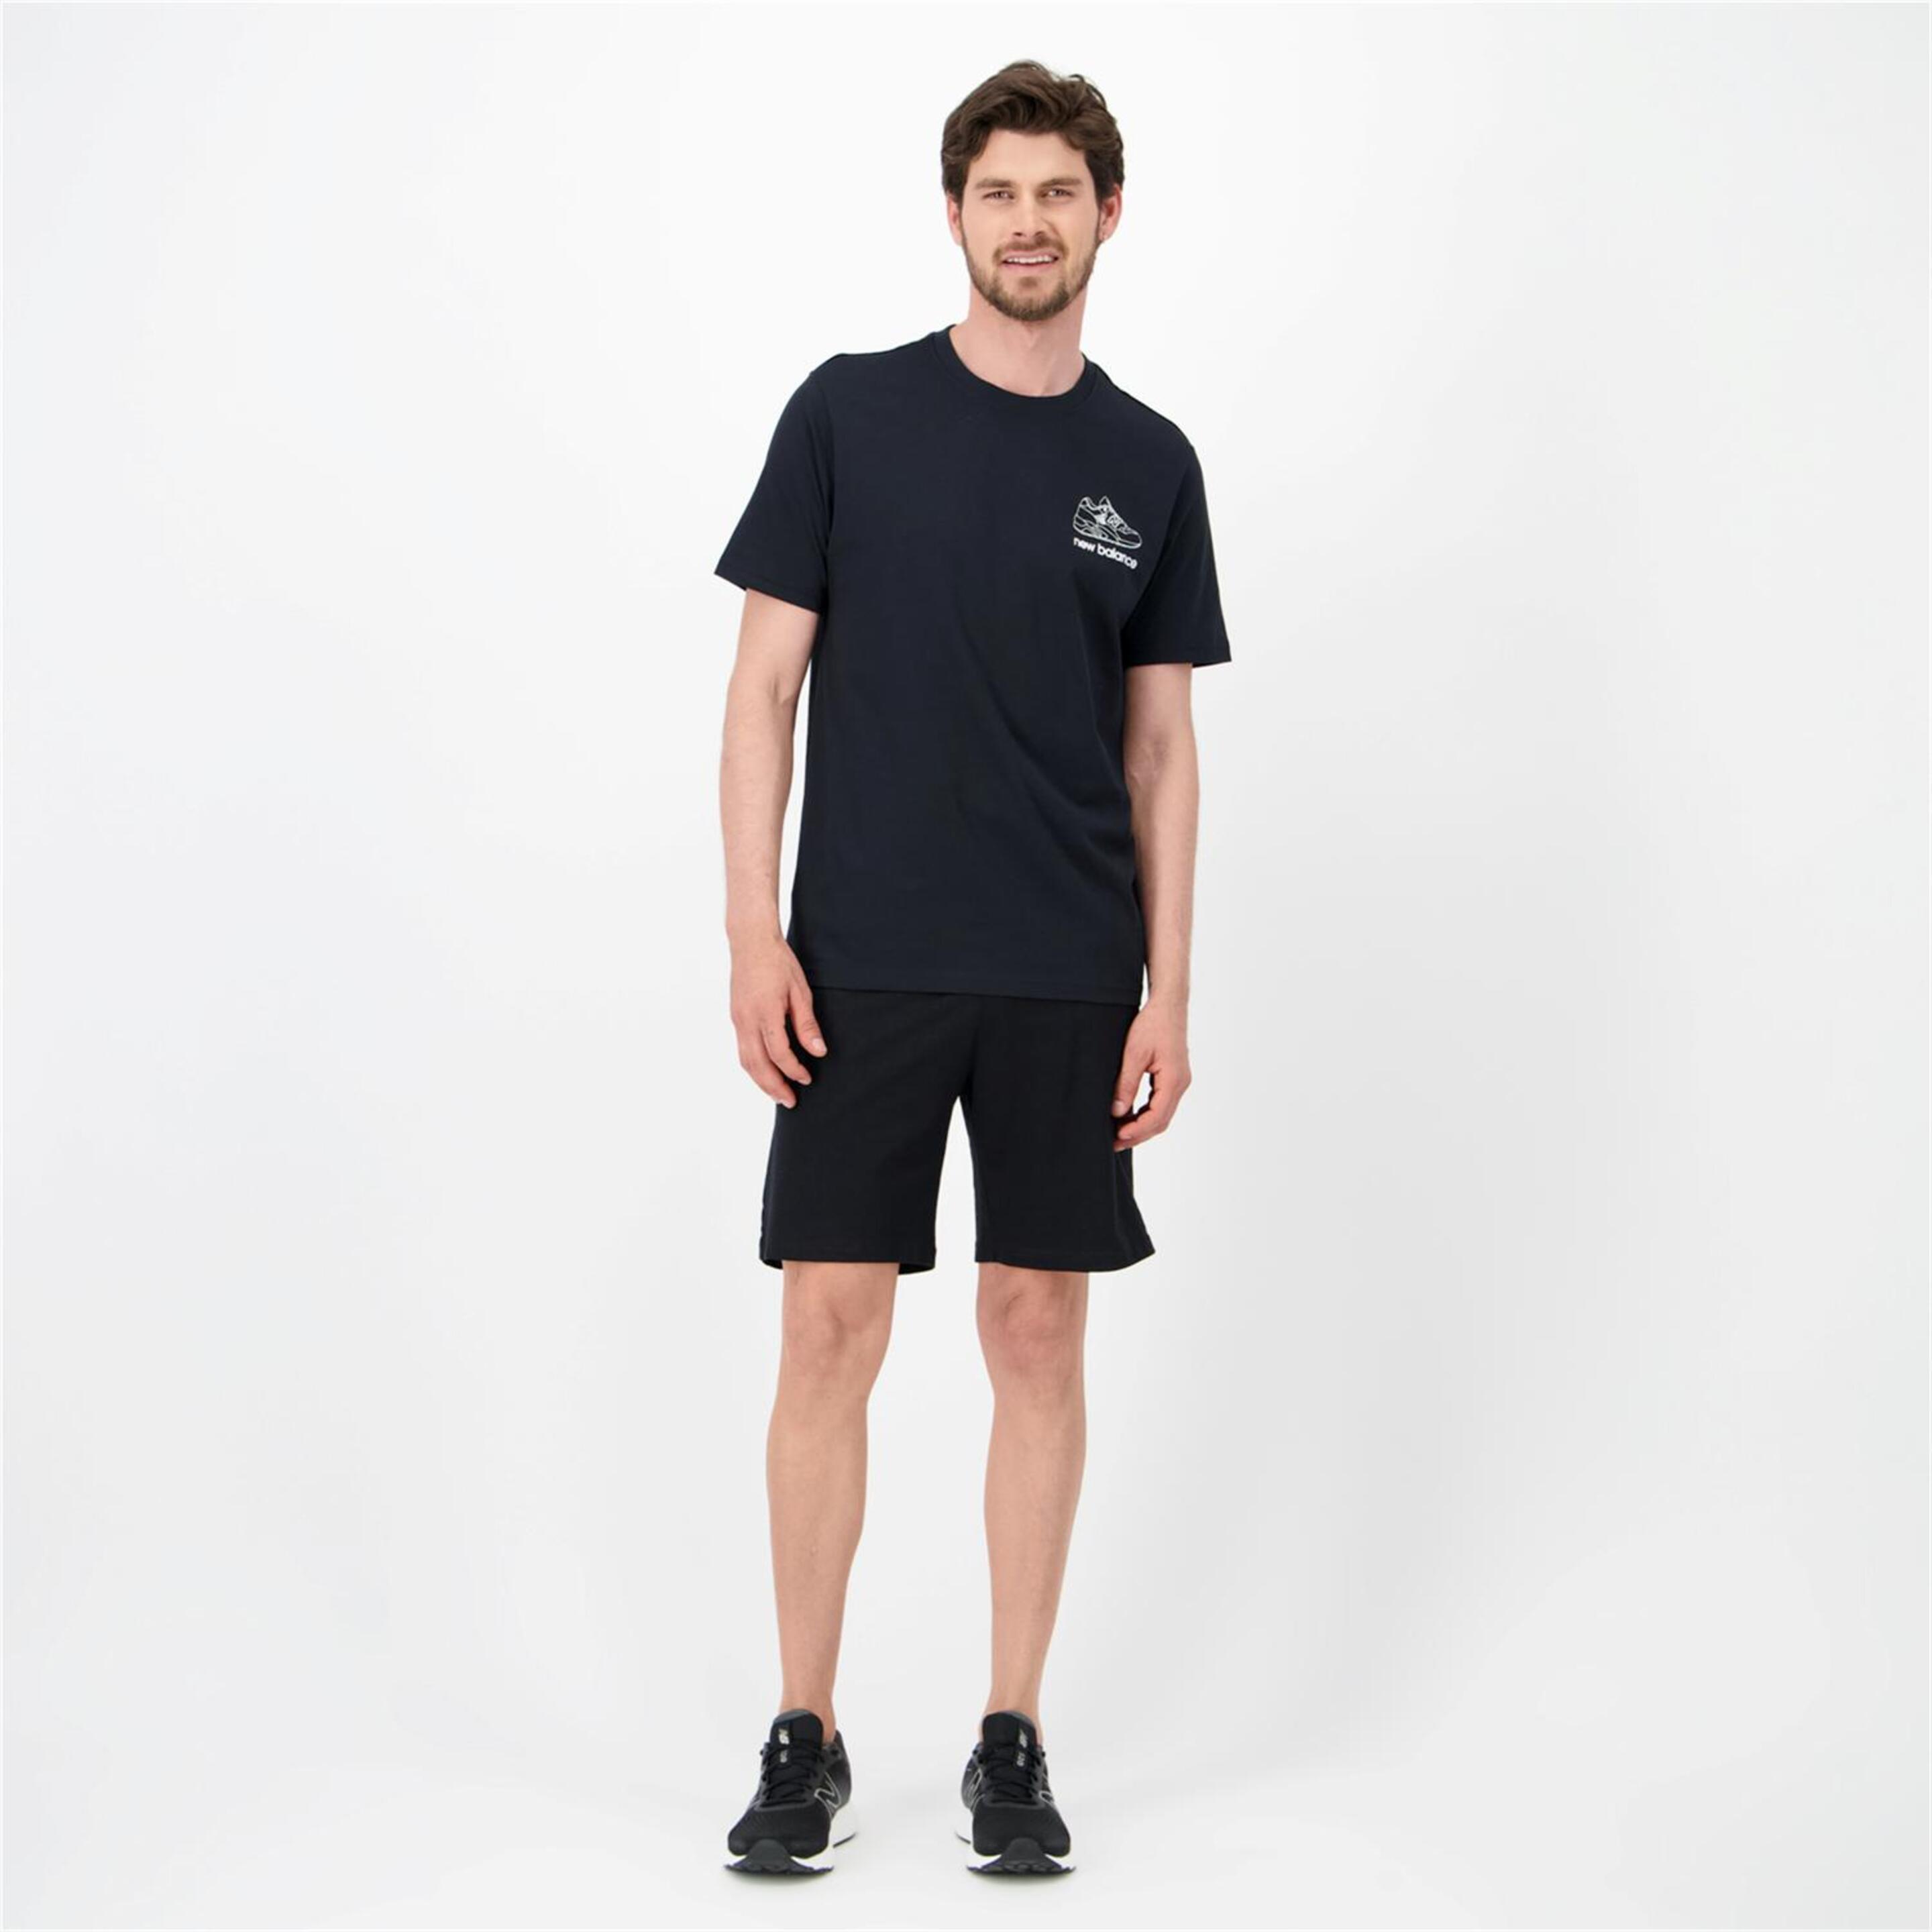 New Balance Sneaker - Negro - Camiseta Hombre